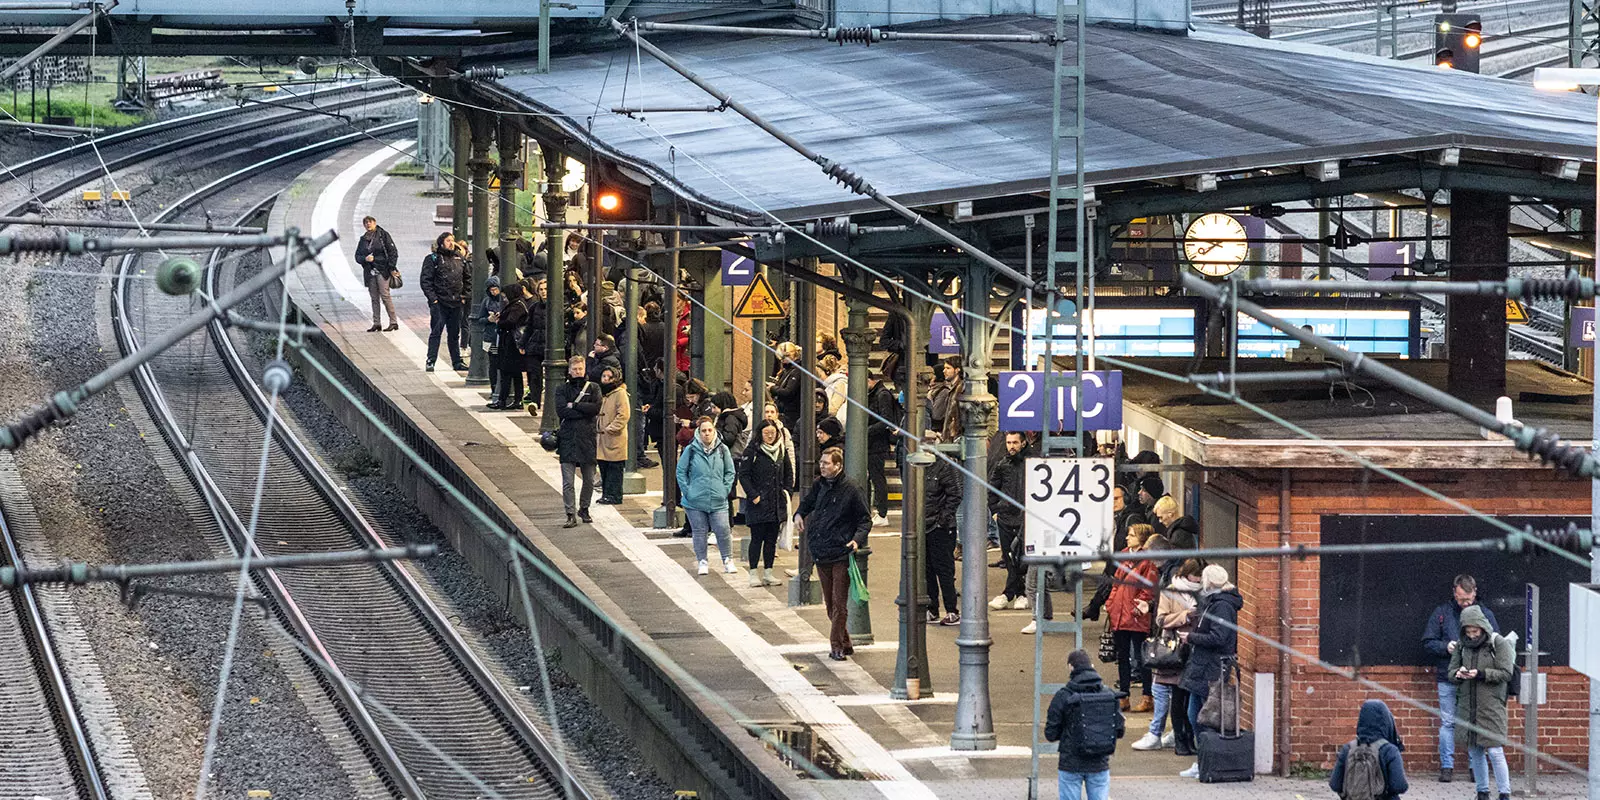 Überschaubar war es gegen 8 Uhr auf dem Bahnsteig im Bahnhof Harburg. Foto: zv